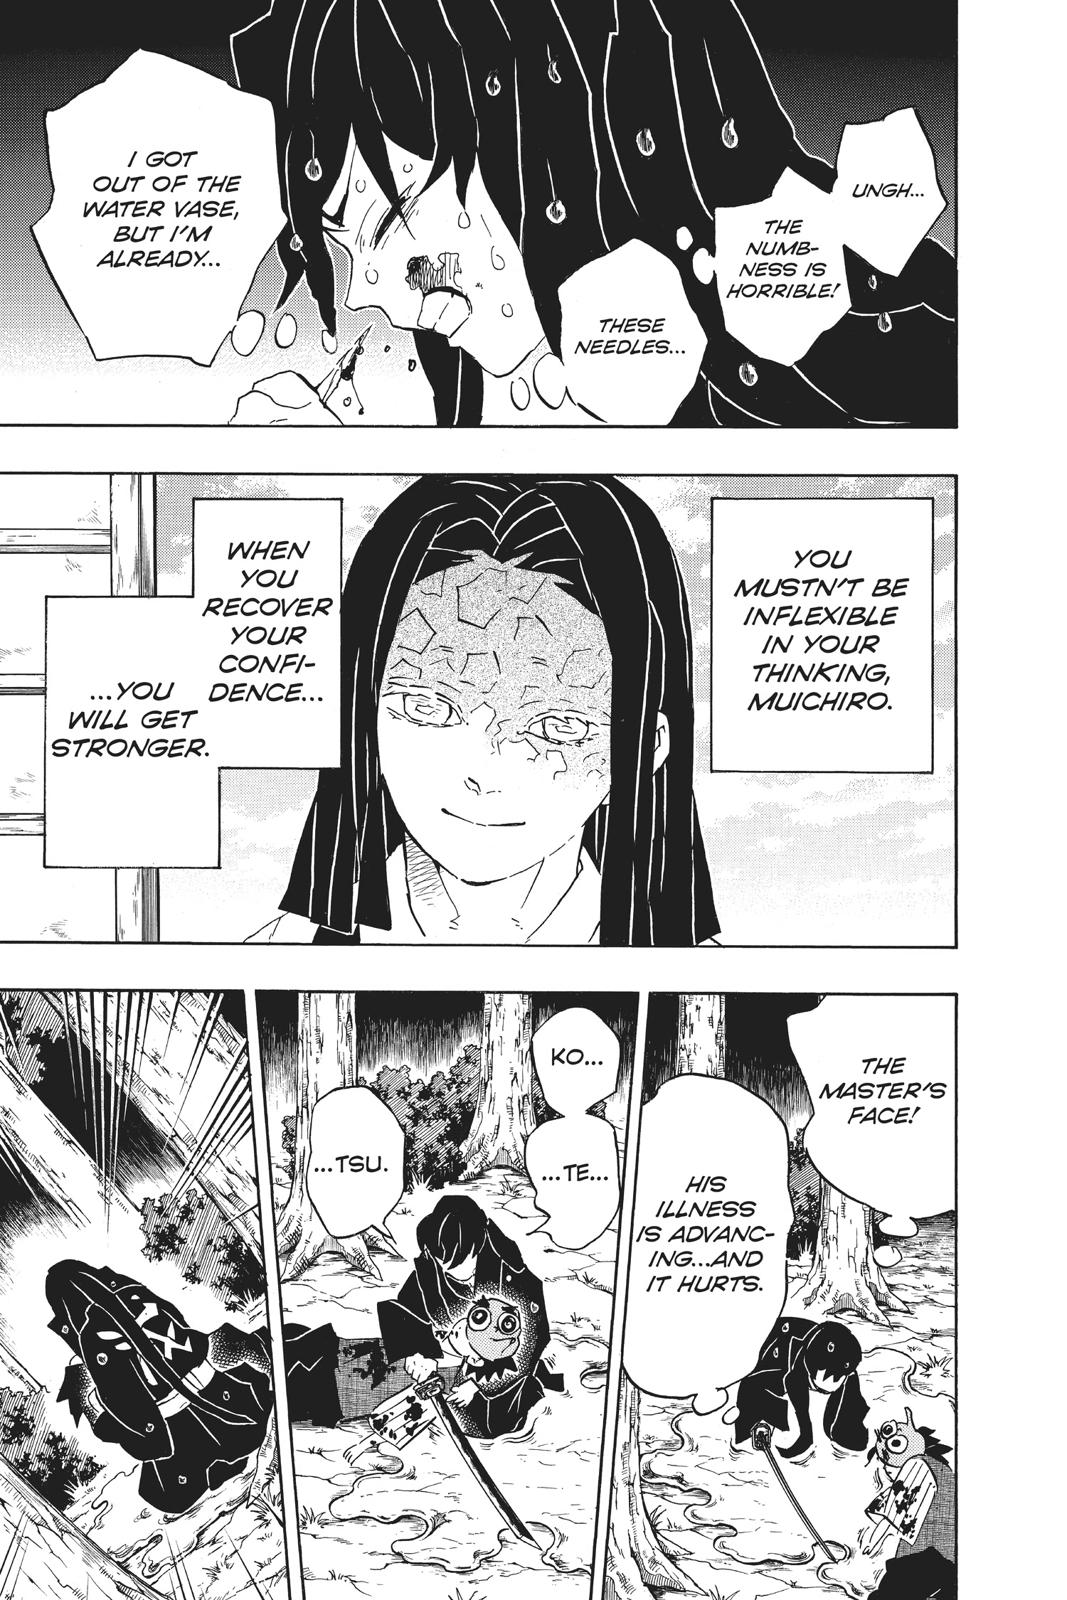 Demon Slayer Manga Manga Chapter - 118 - image 3